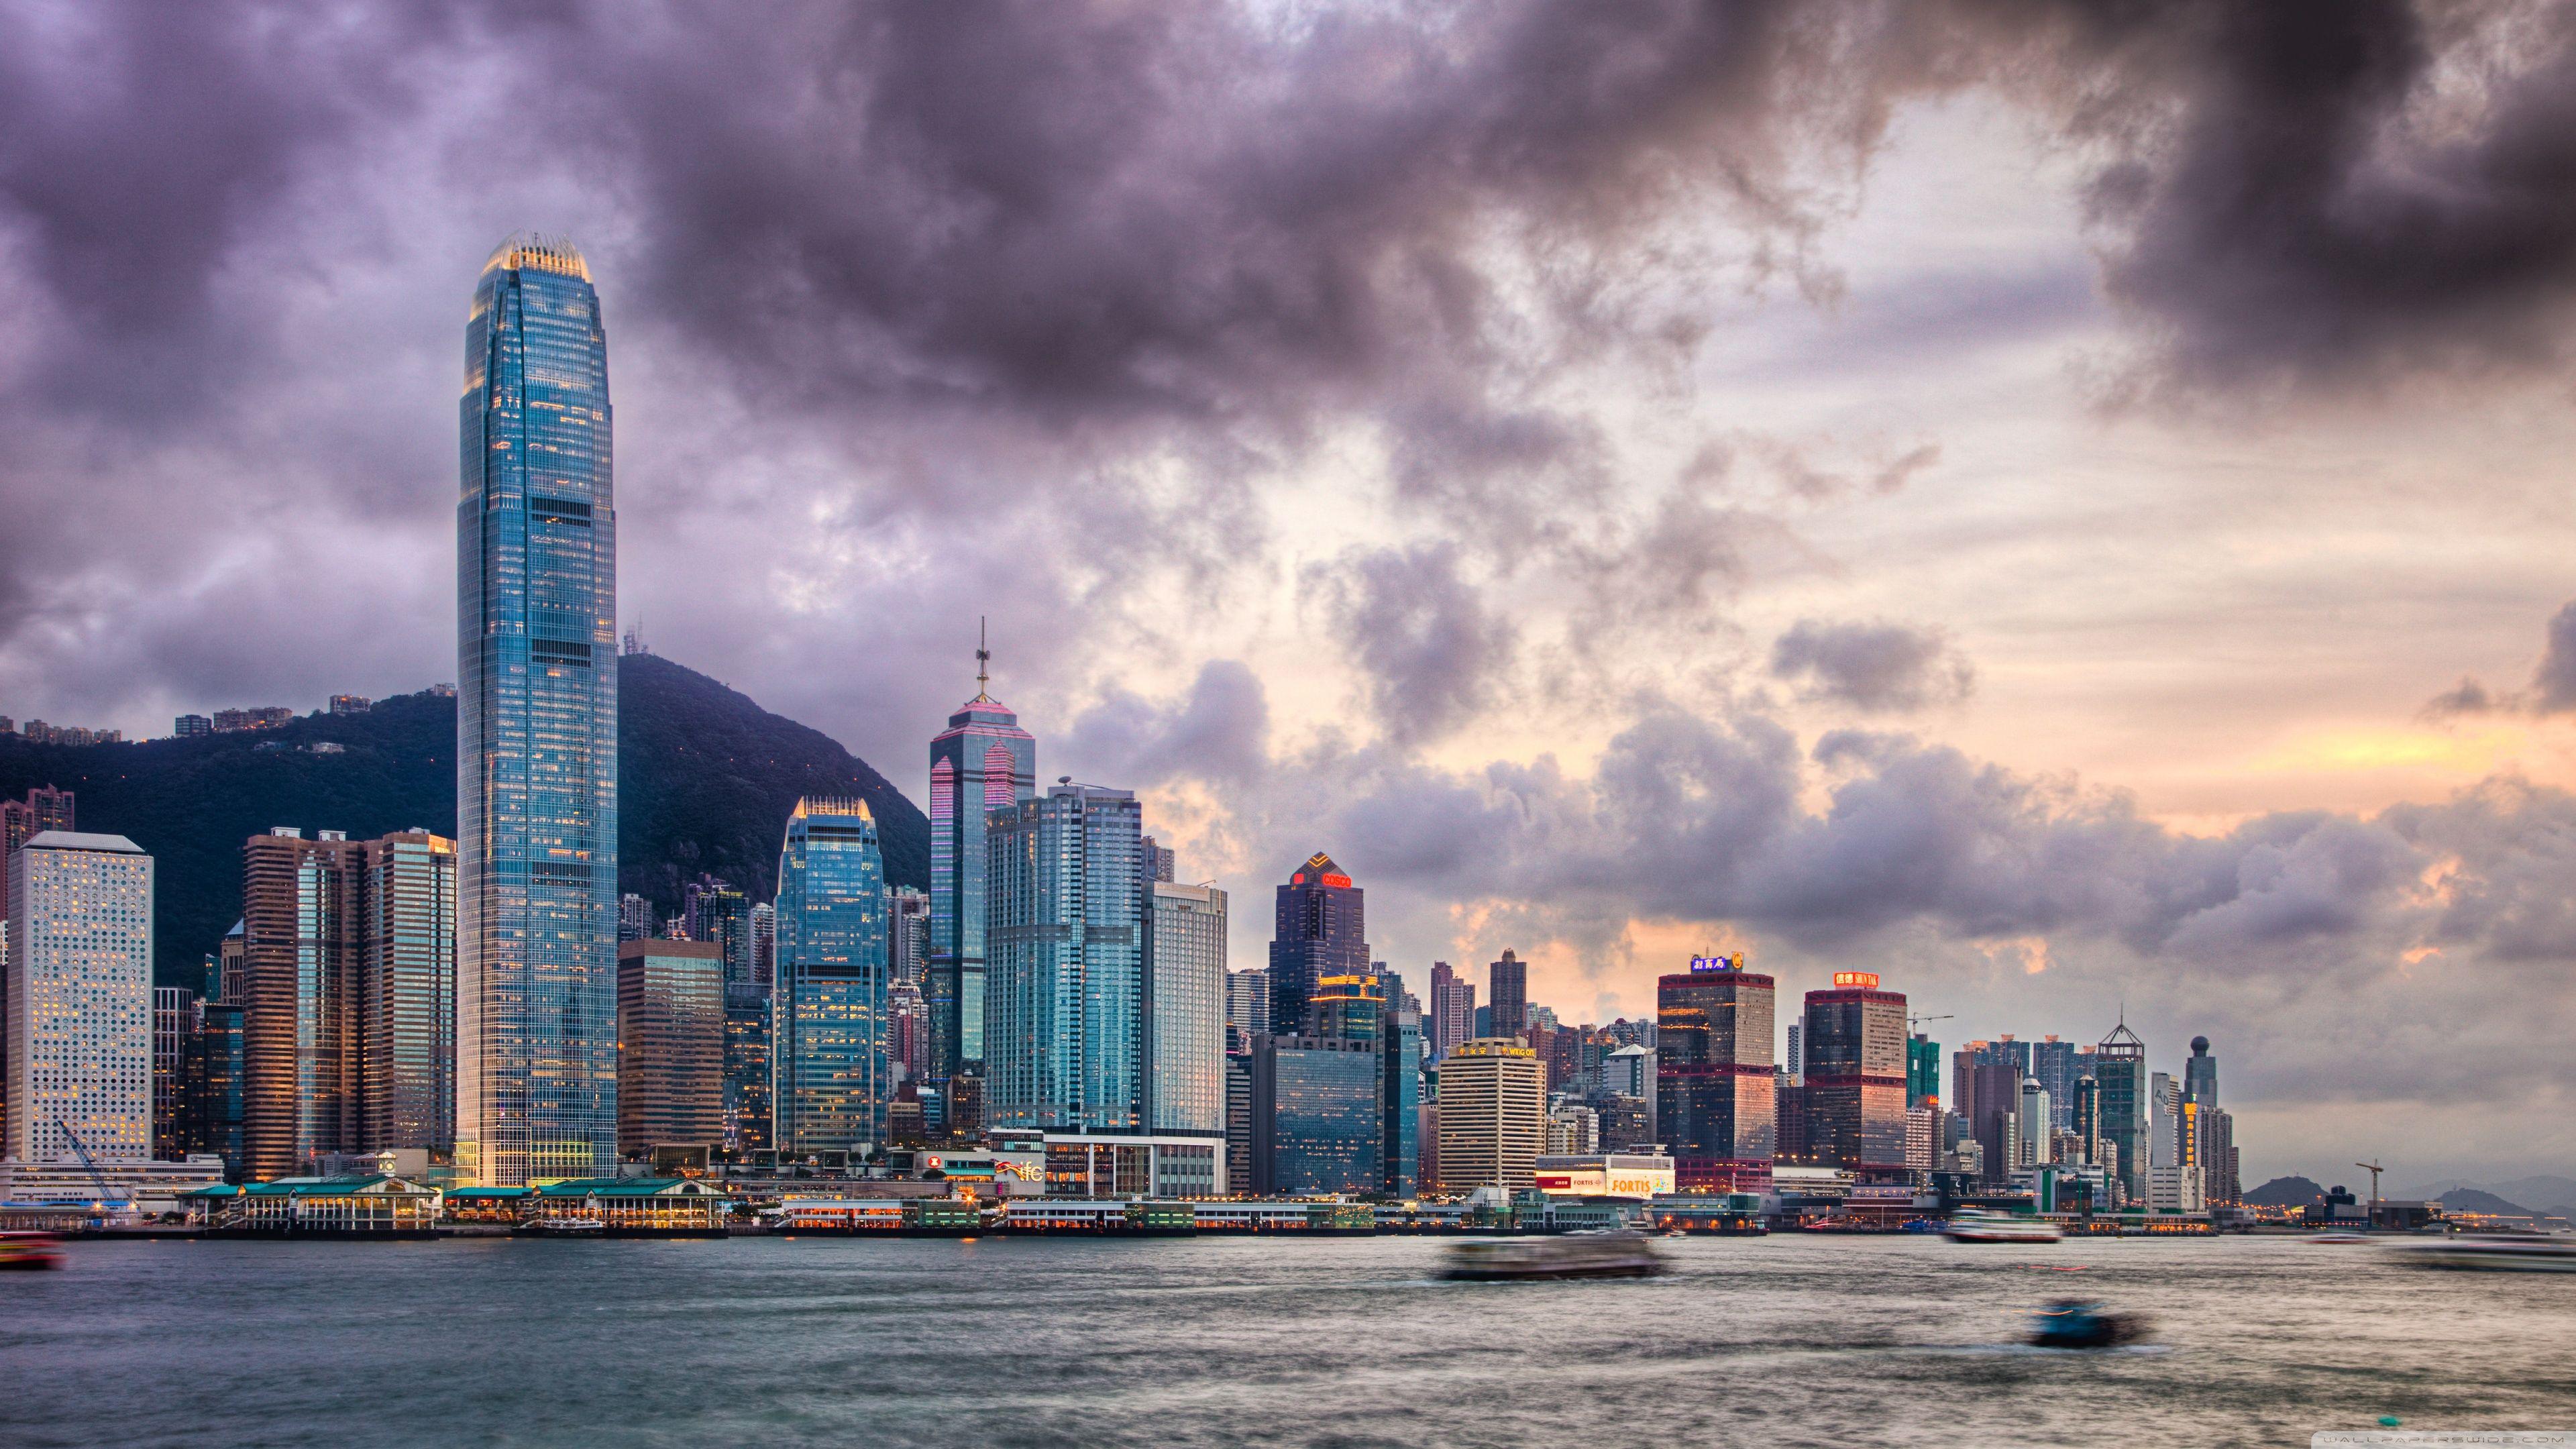 Chỉ cần một cái click chuột, bạn có thể tải ngay những hình nền 4K Hong Kong đẹp mê hồn này. Hình nền miễn phí này sẽ bổ sung rất nhiều sự tươi mới và công nghệ mới cho máy tính hay laptop của bạn. Hãy tận hưởng trọn vẹn những niềm vui được cung cấp bởi hình nền ấn tượng từ thành phố Hong Kong.